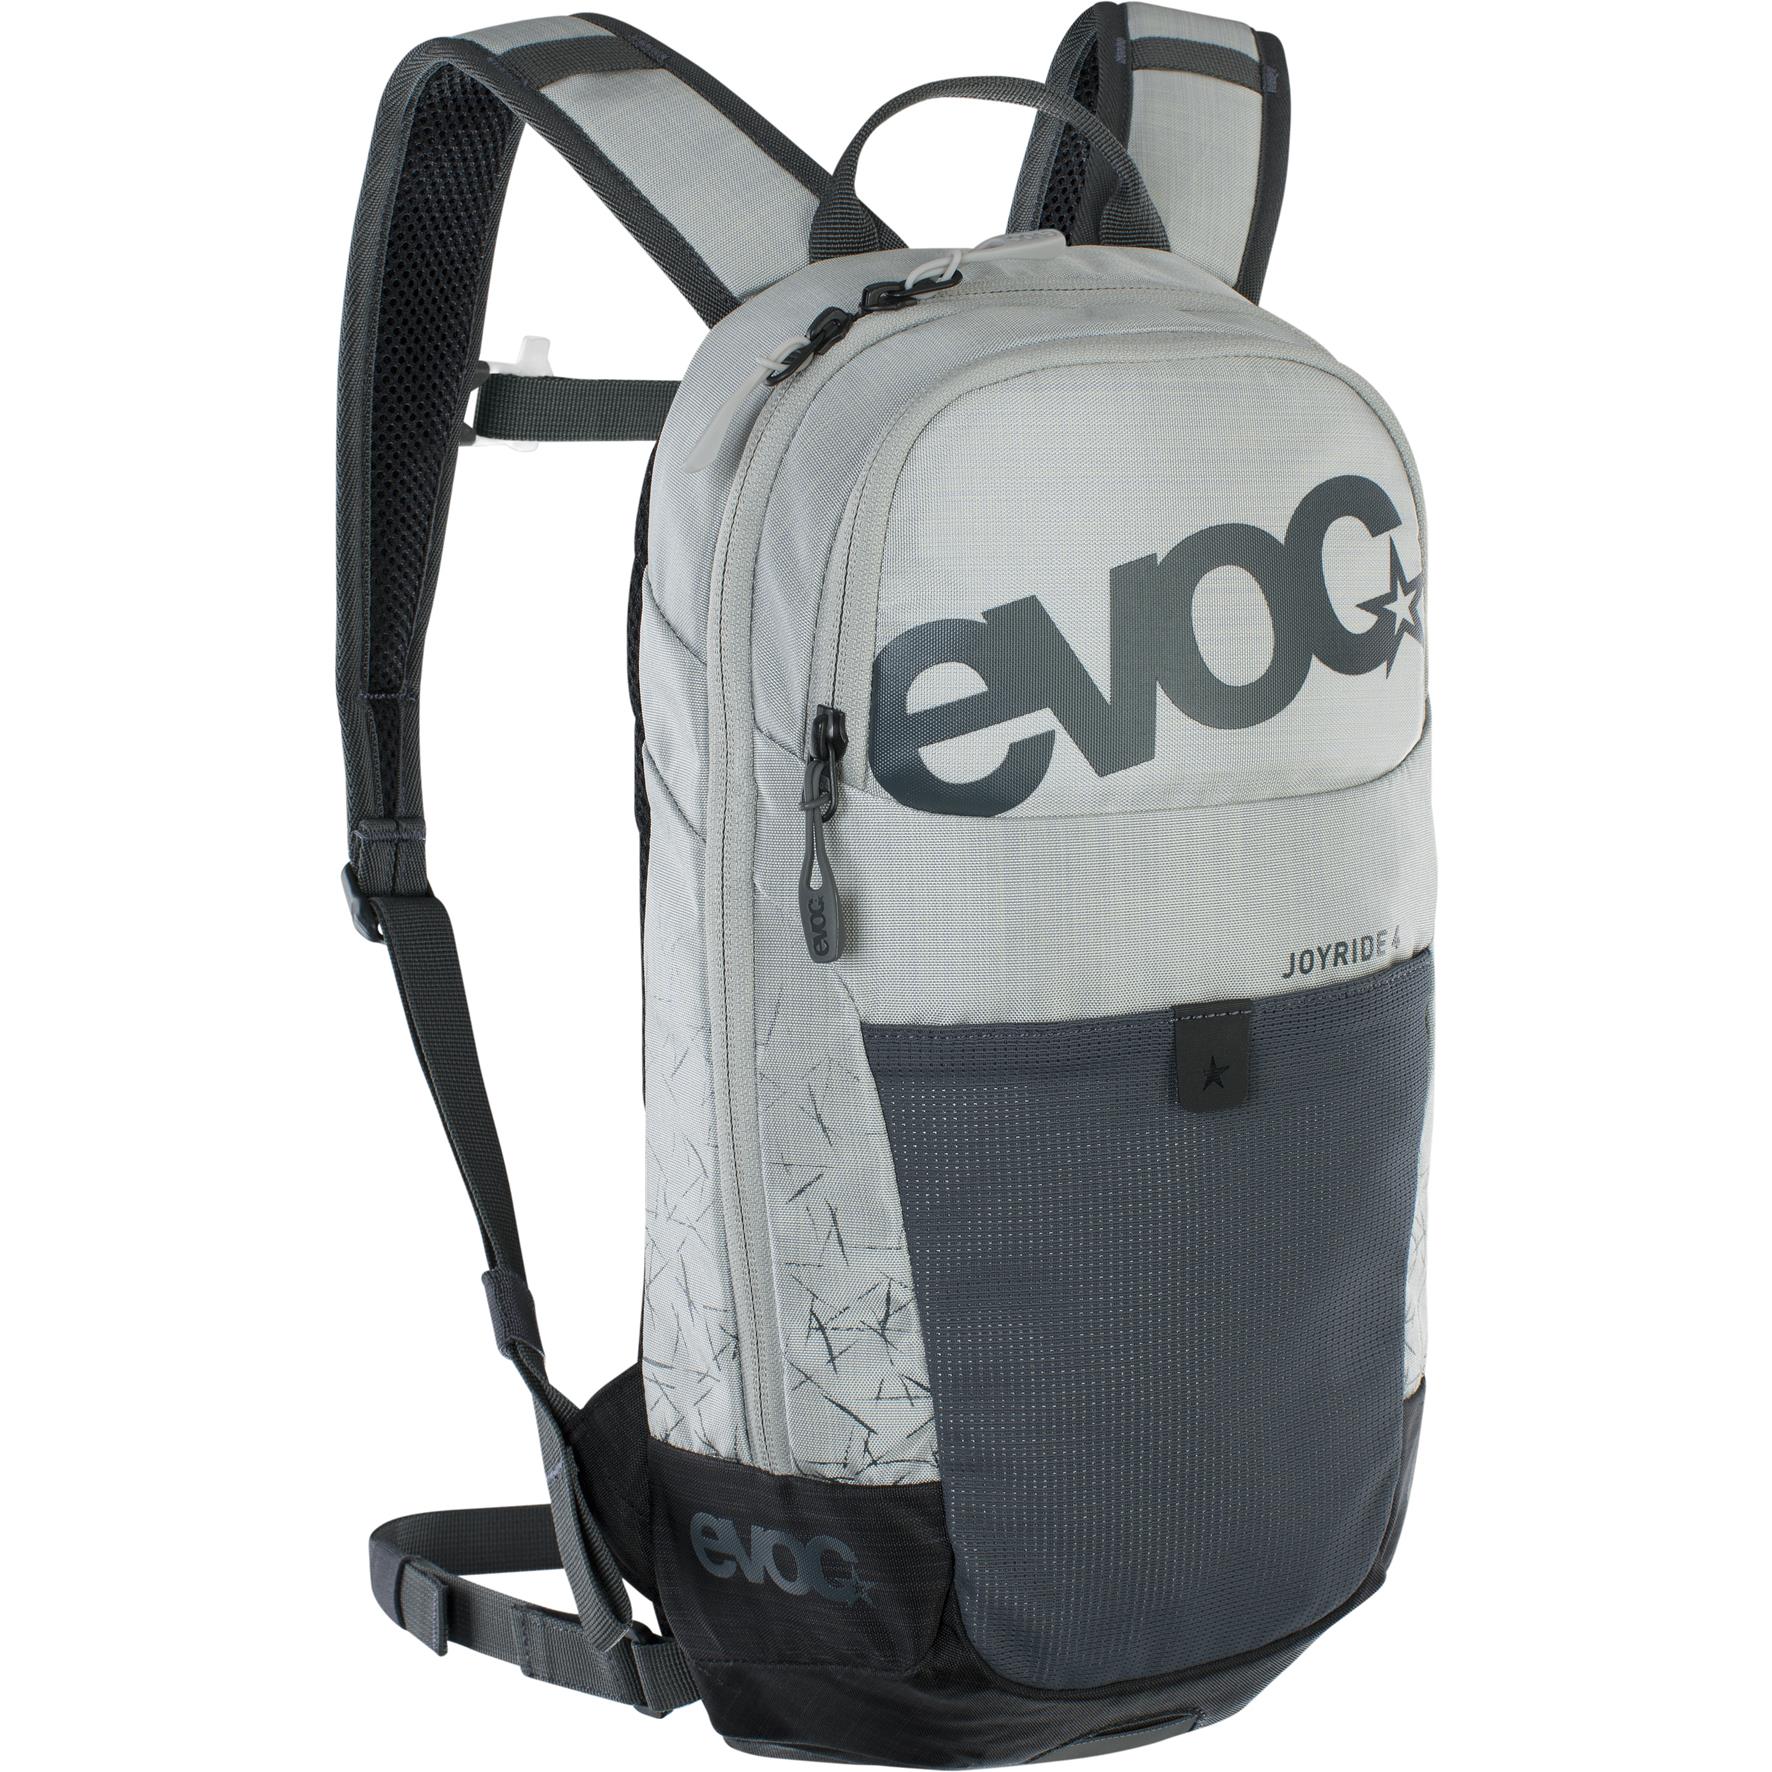 Evoc Joyride 4L Kids Backpack Silver/Carbon Grey 4L